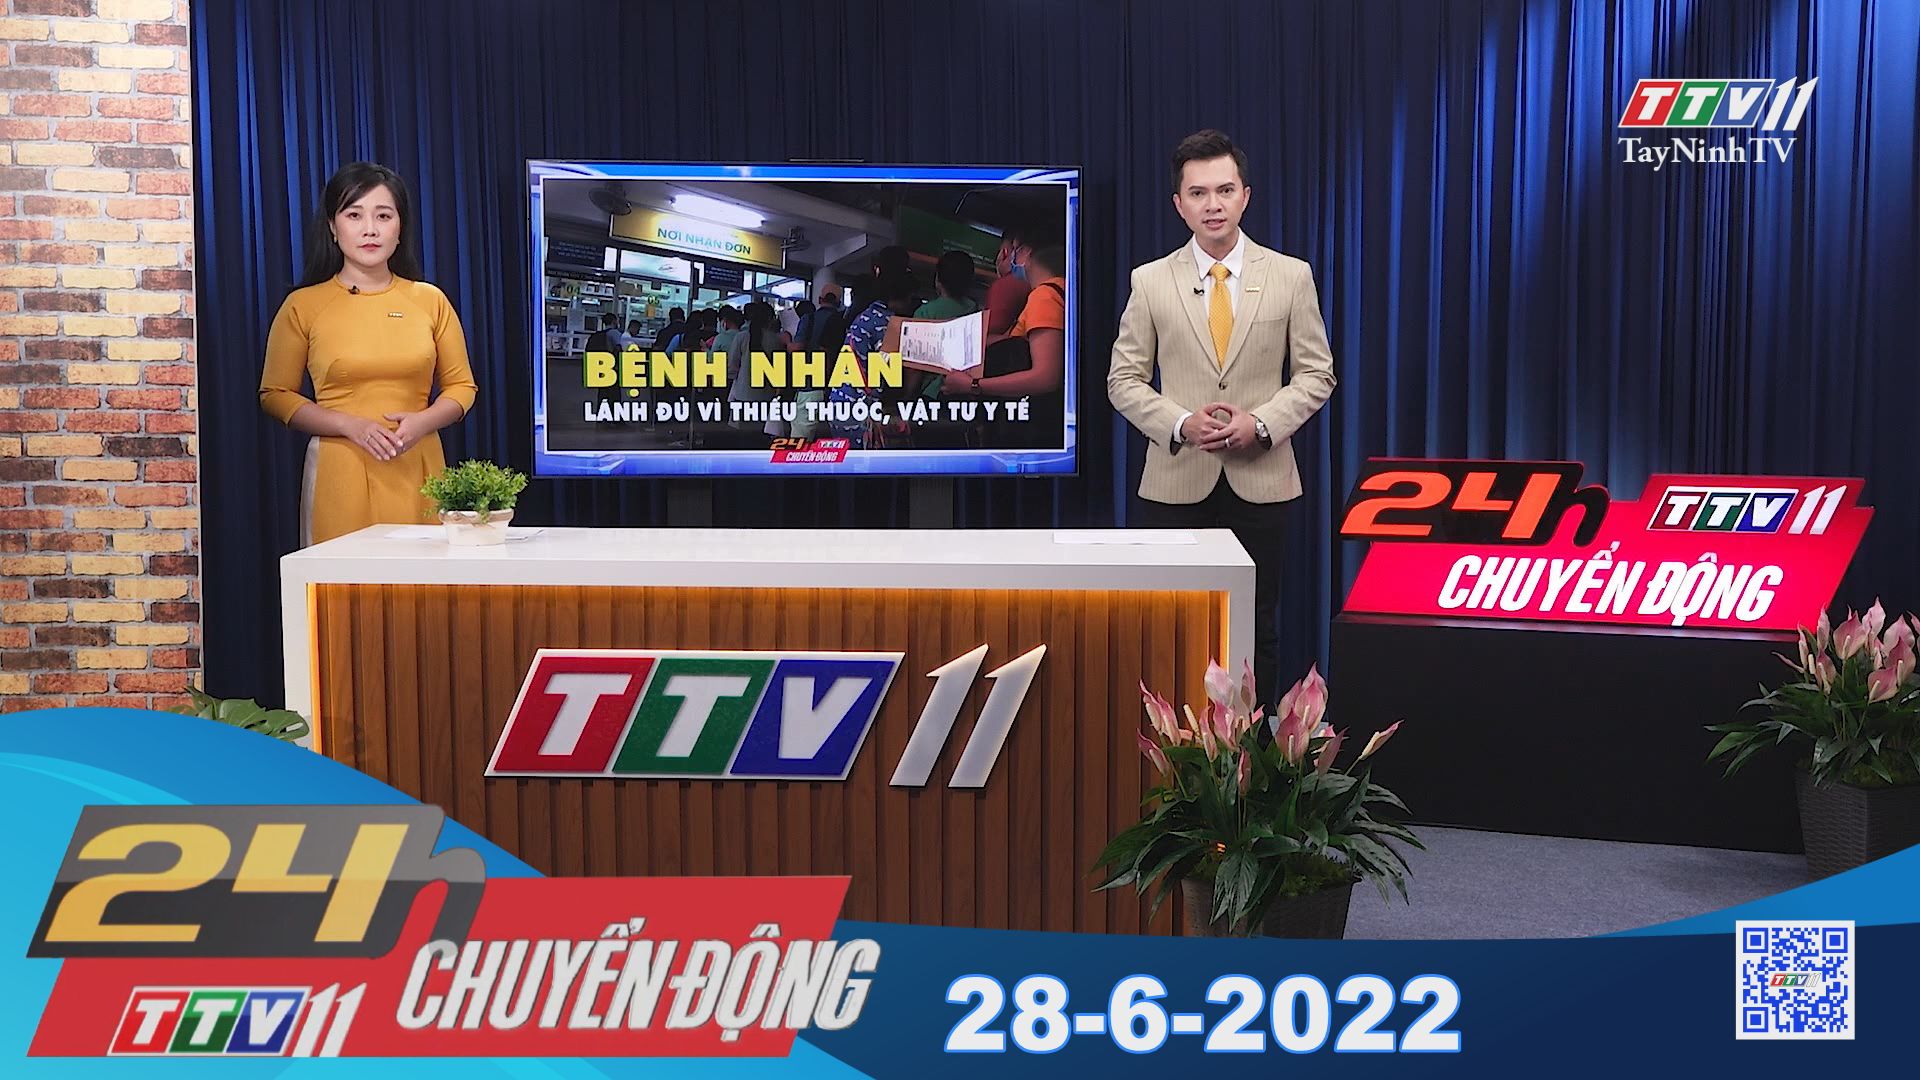 24h Chuyển động 28-6-2022 | Tin tức hôm nay | TayNinhTV